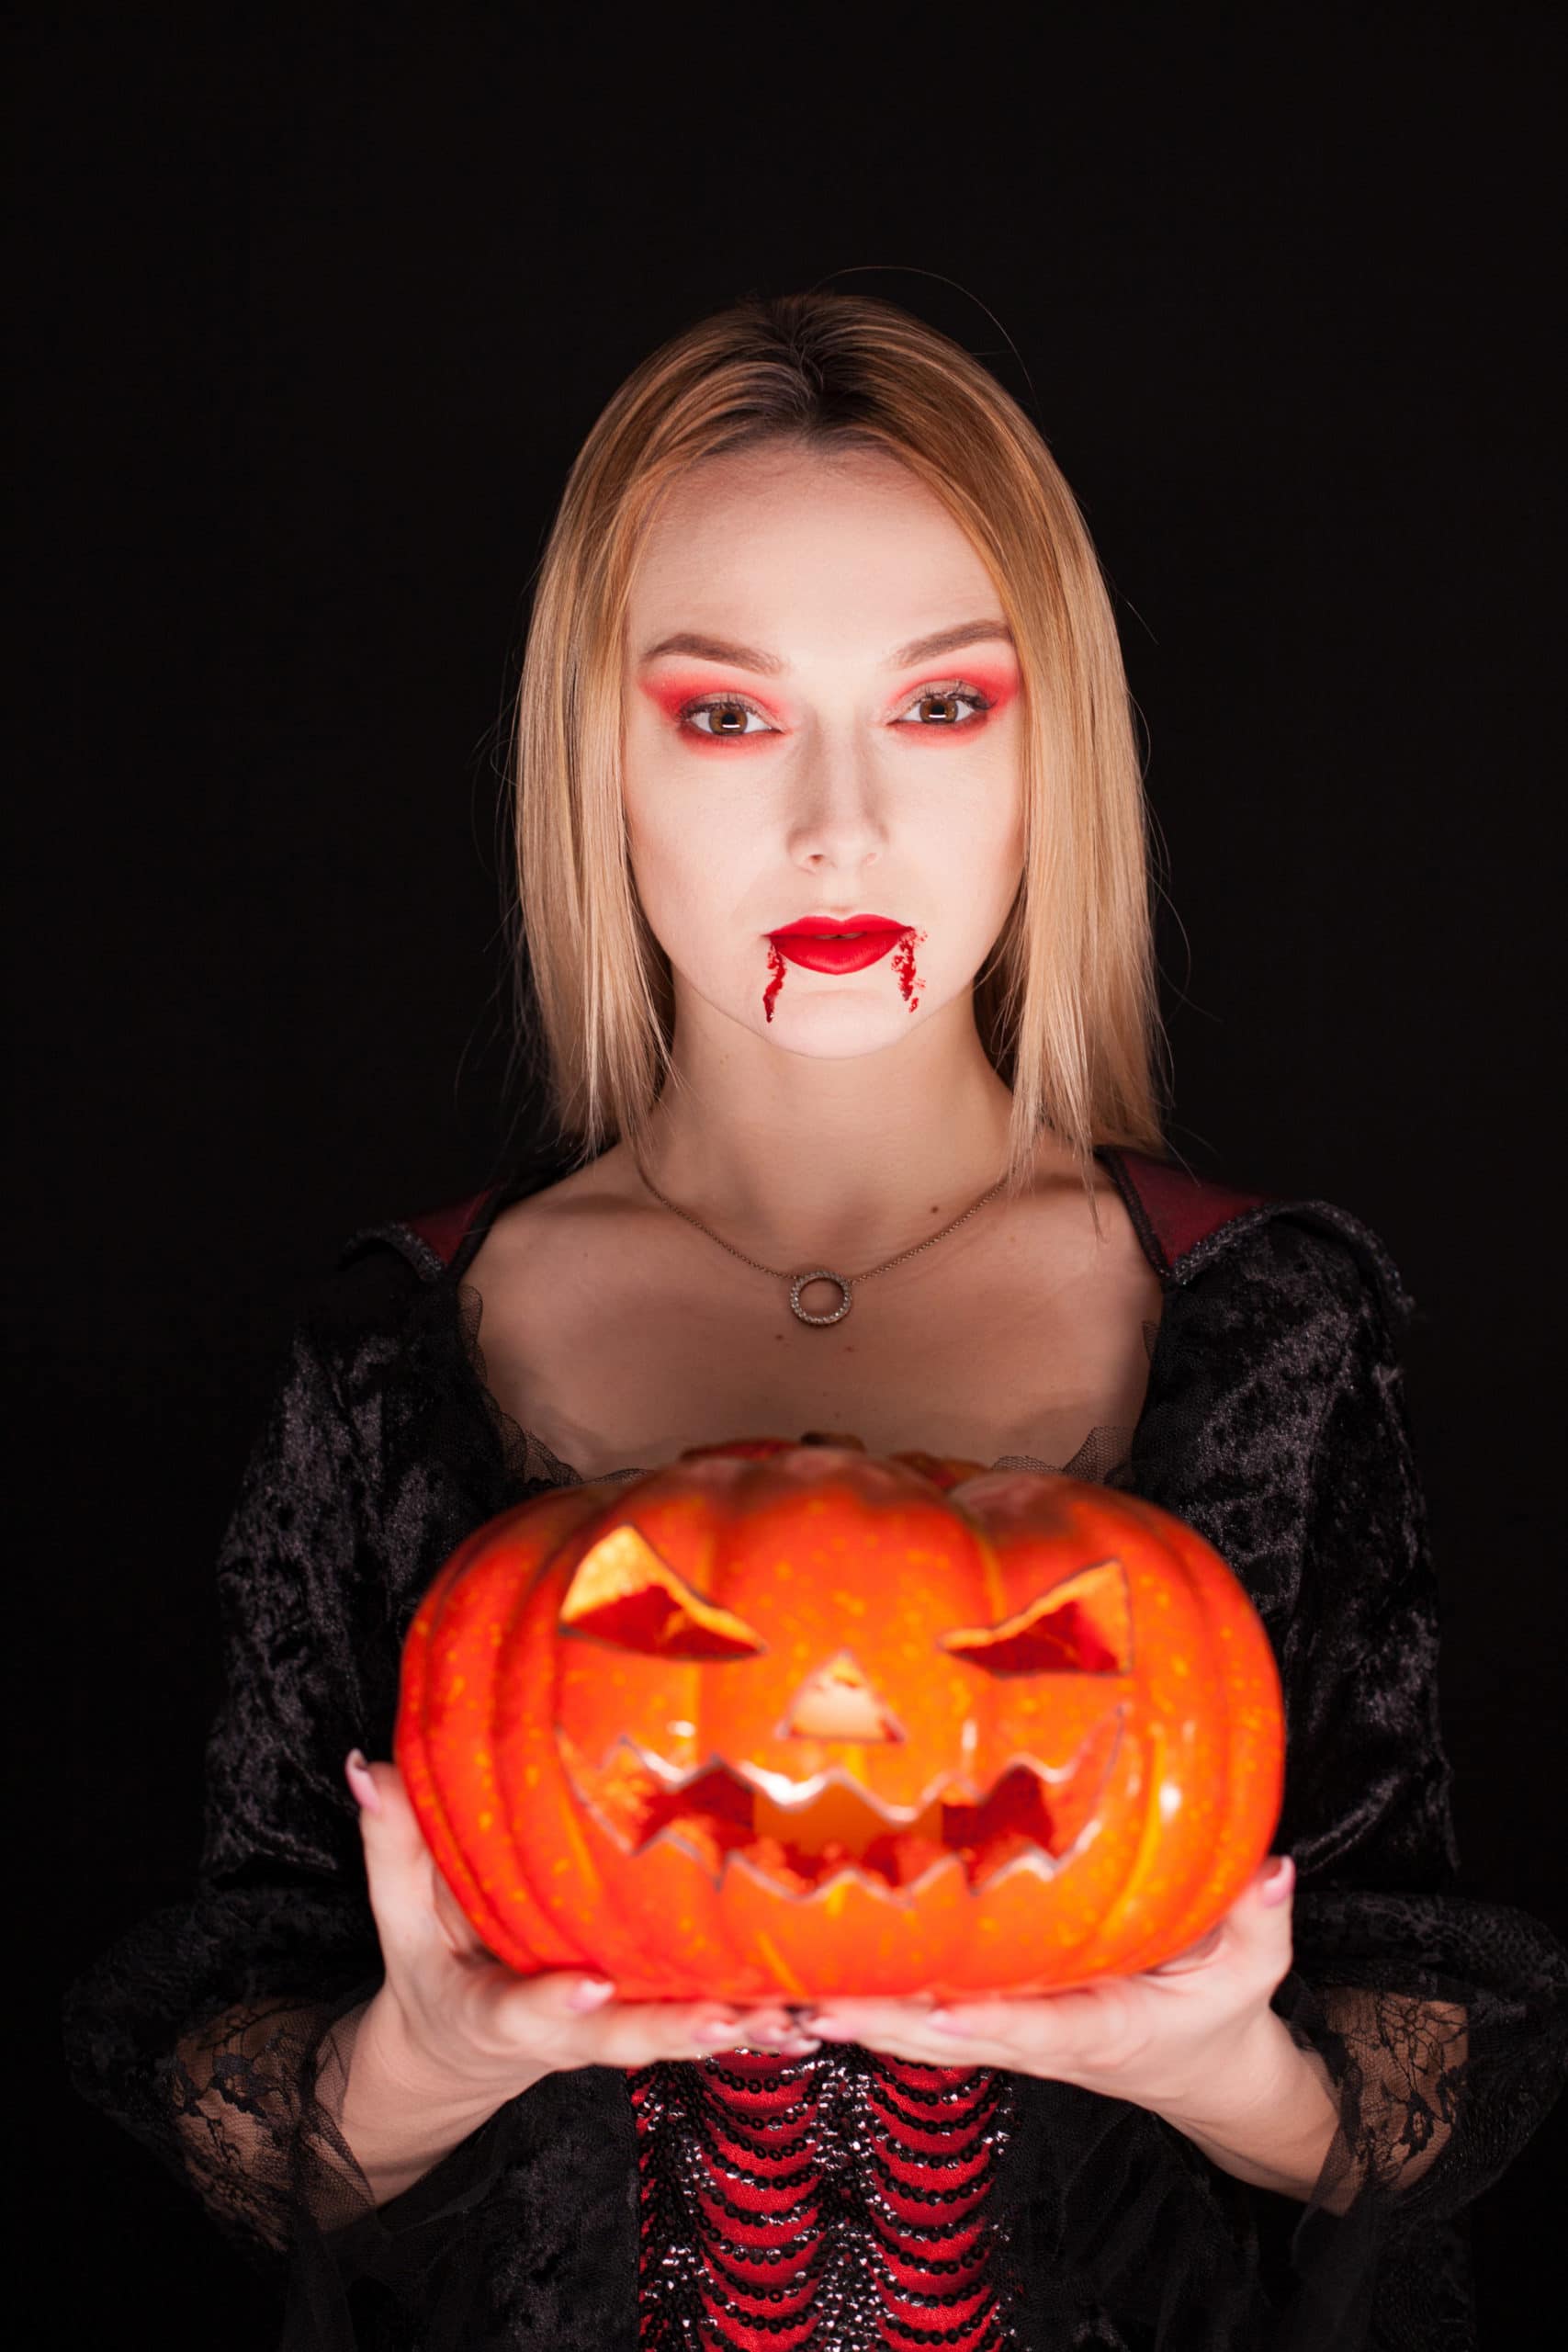 Maquiagem de vampiro: Guia completo e 5 inspirações pra você, como fazer  maquiagem de vampiro 